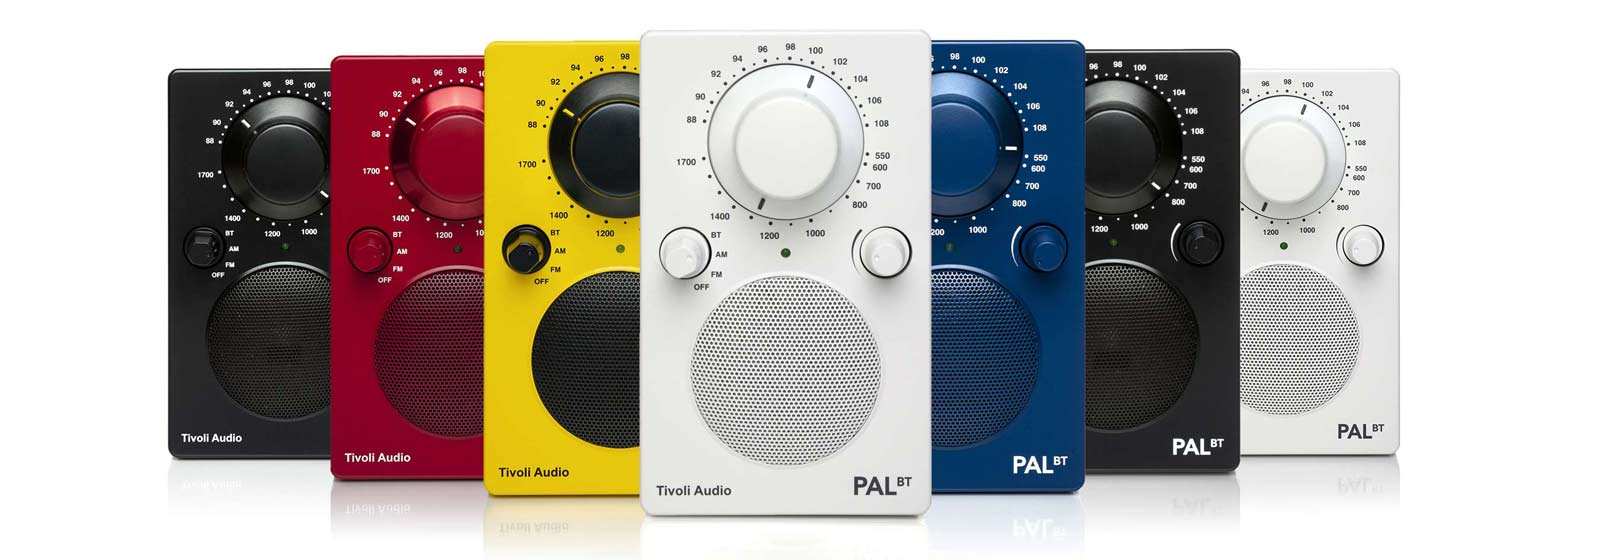 Tivoli-PAL-radios-all-colours